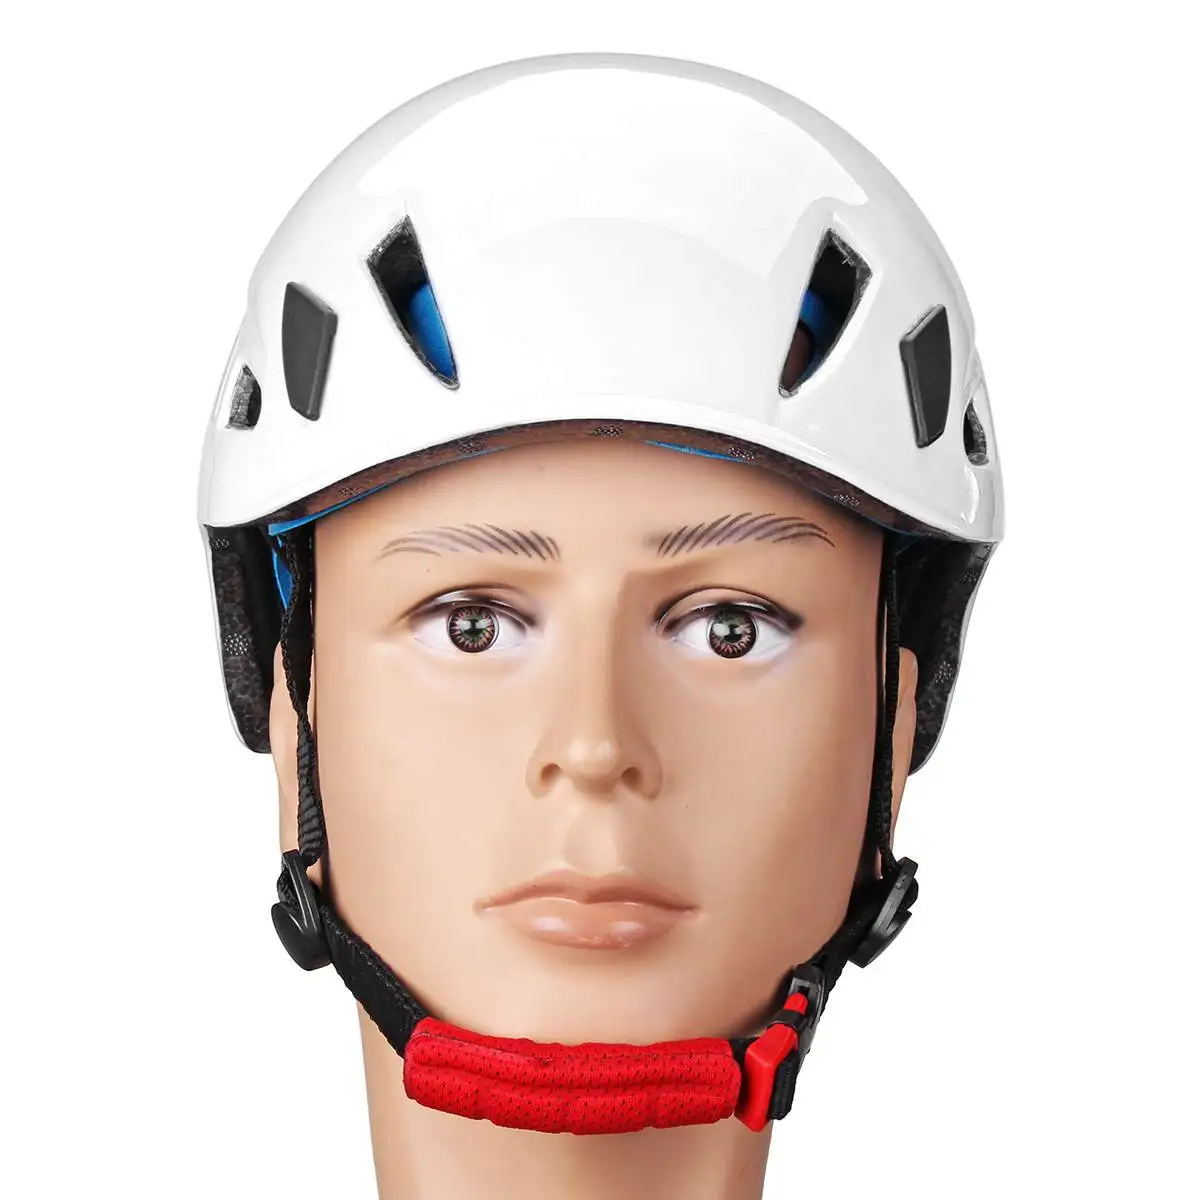 58-62 см EPS рок безопасность на открытом воздухе шлем Speleology горное спасательное оборудование для расширения безопасности шлем спелеологический рабочий шлем